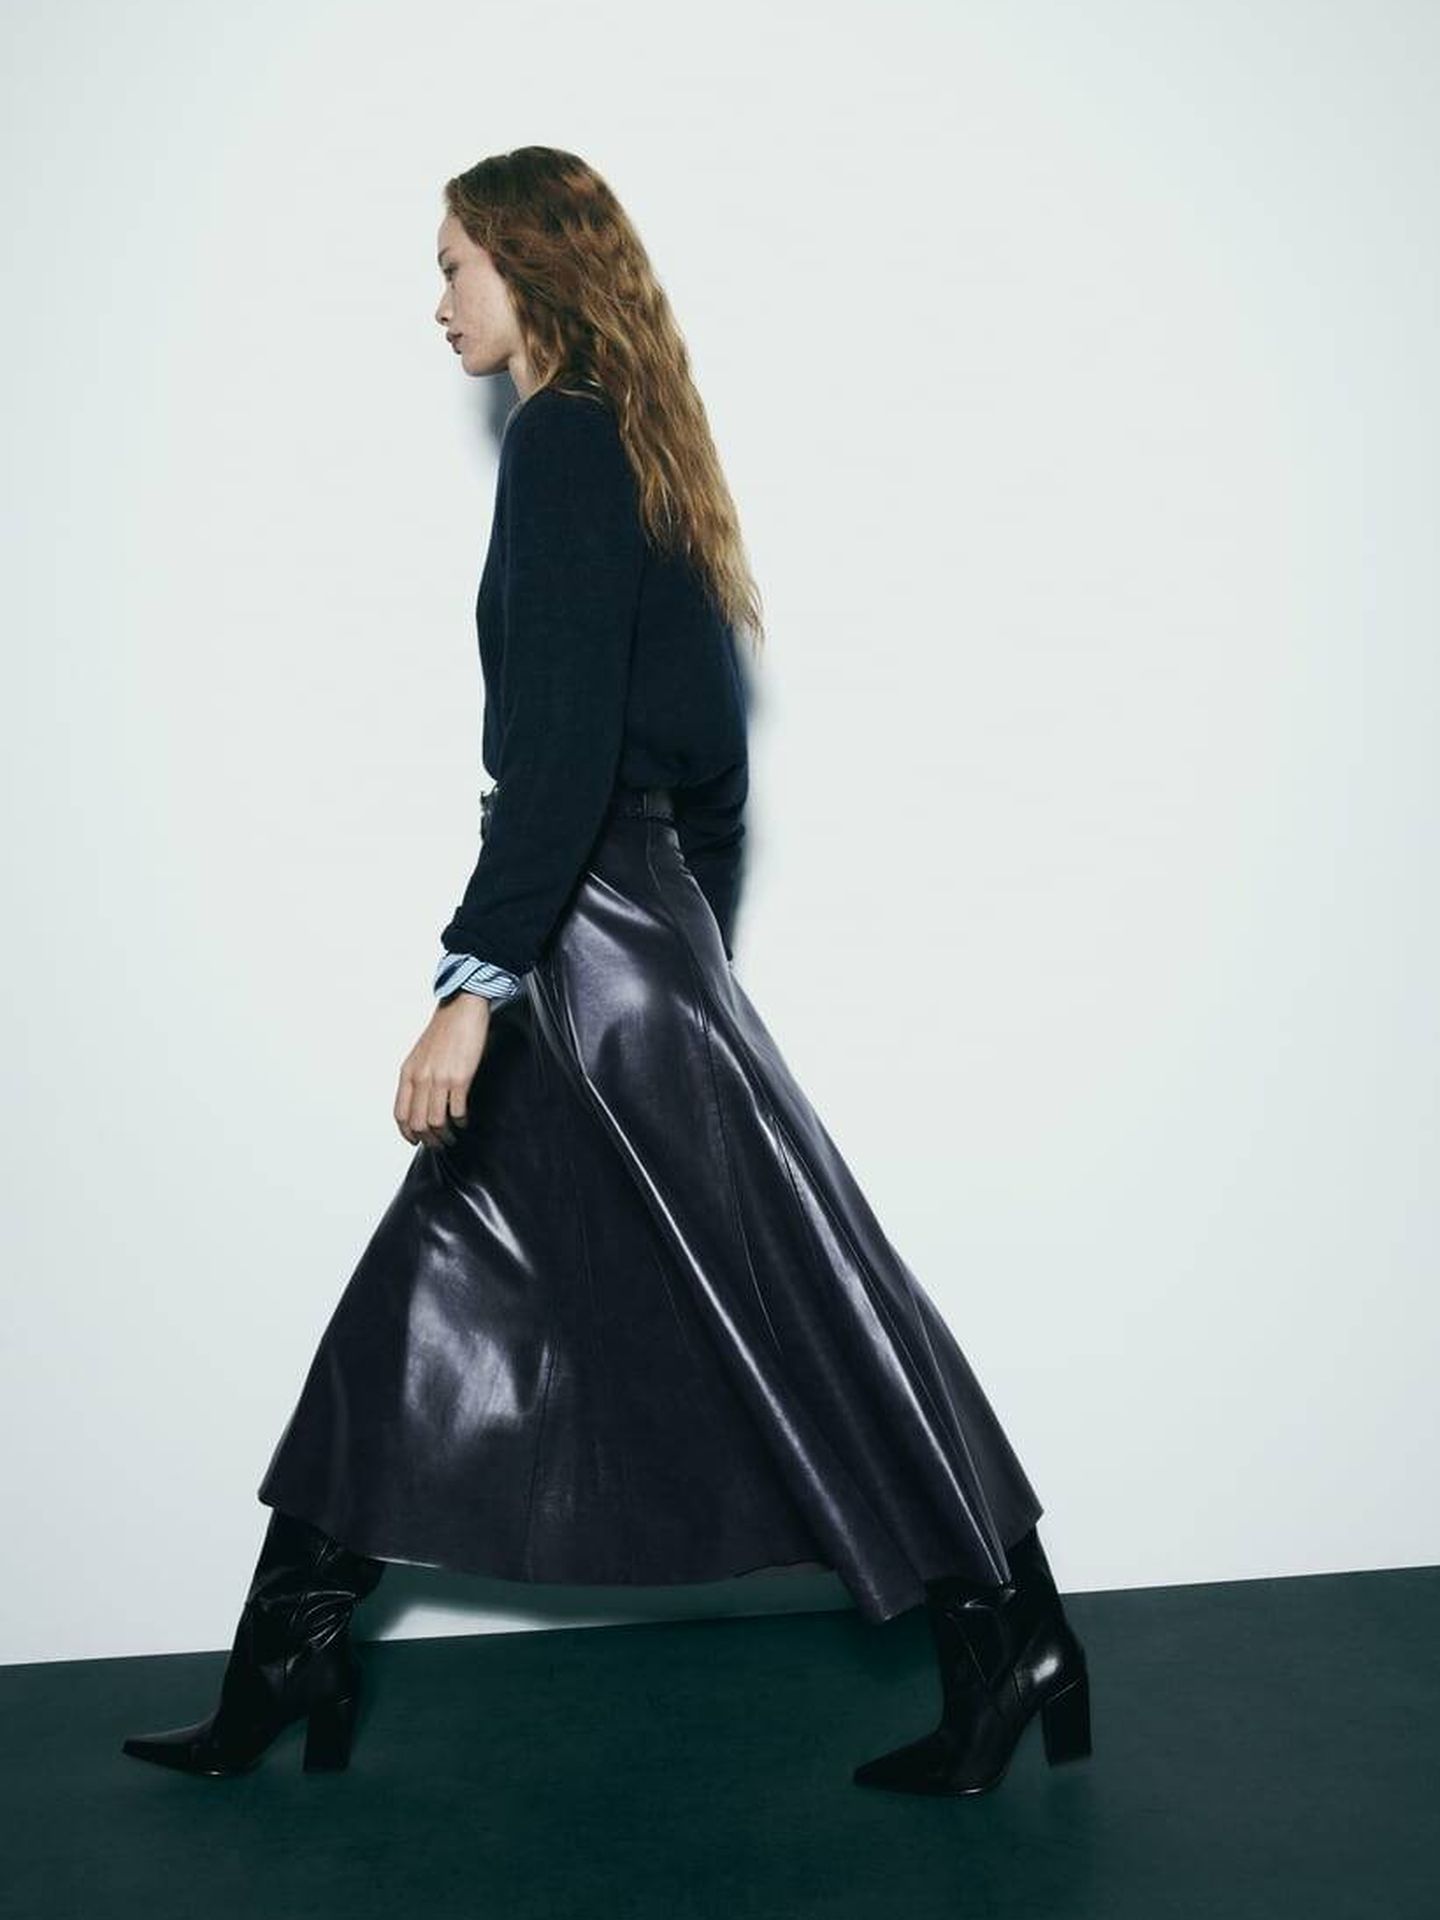 Un ejemplo de cómo combinar esta falda con unas botas o botines será la combinación perfecta para un outfit lleno de estilo. (Zara)